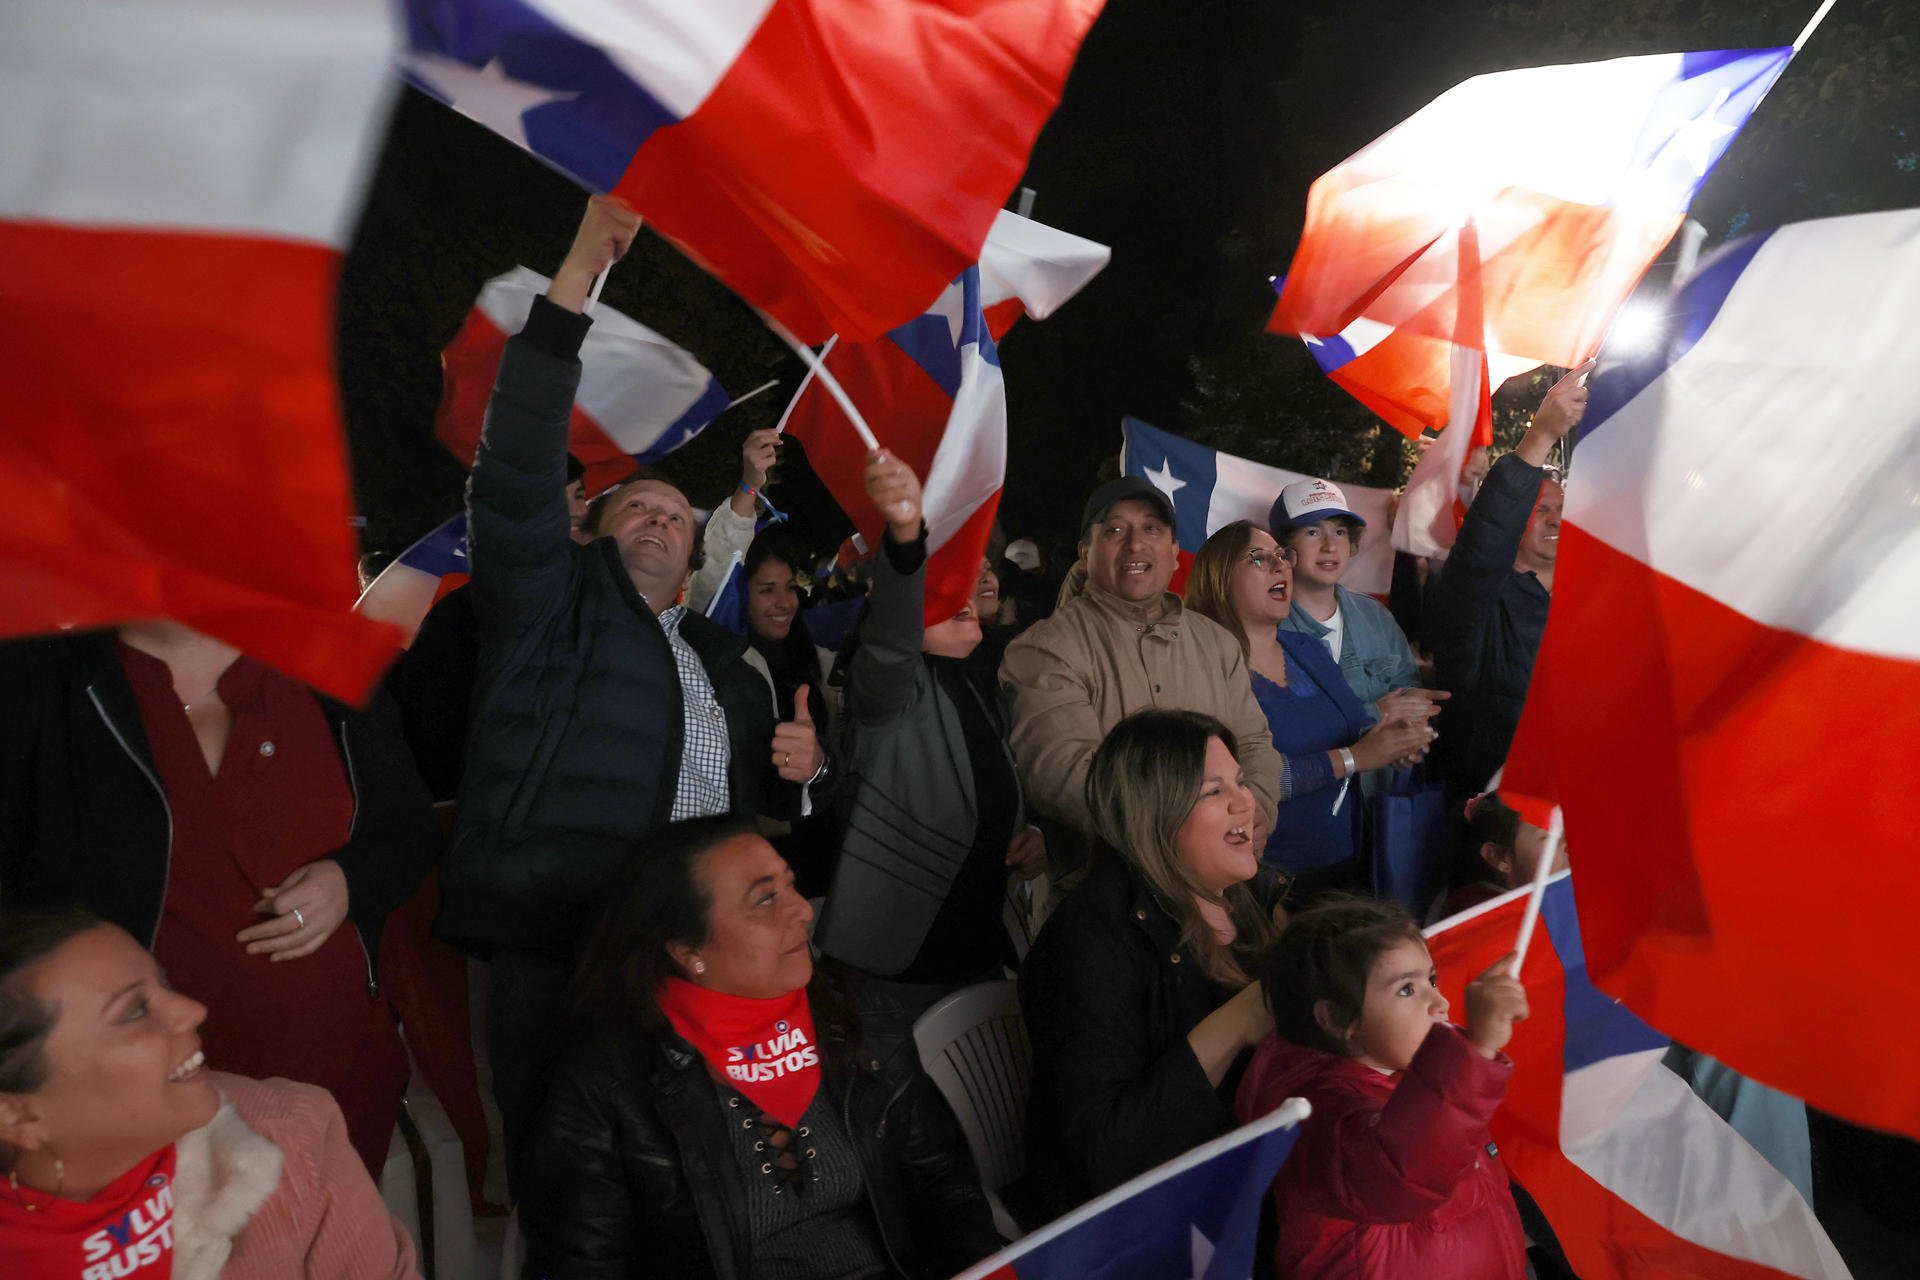 L'extrema dreta arrasa a Xile a les eleccions per reformar la Constitució